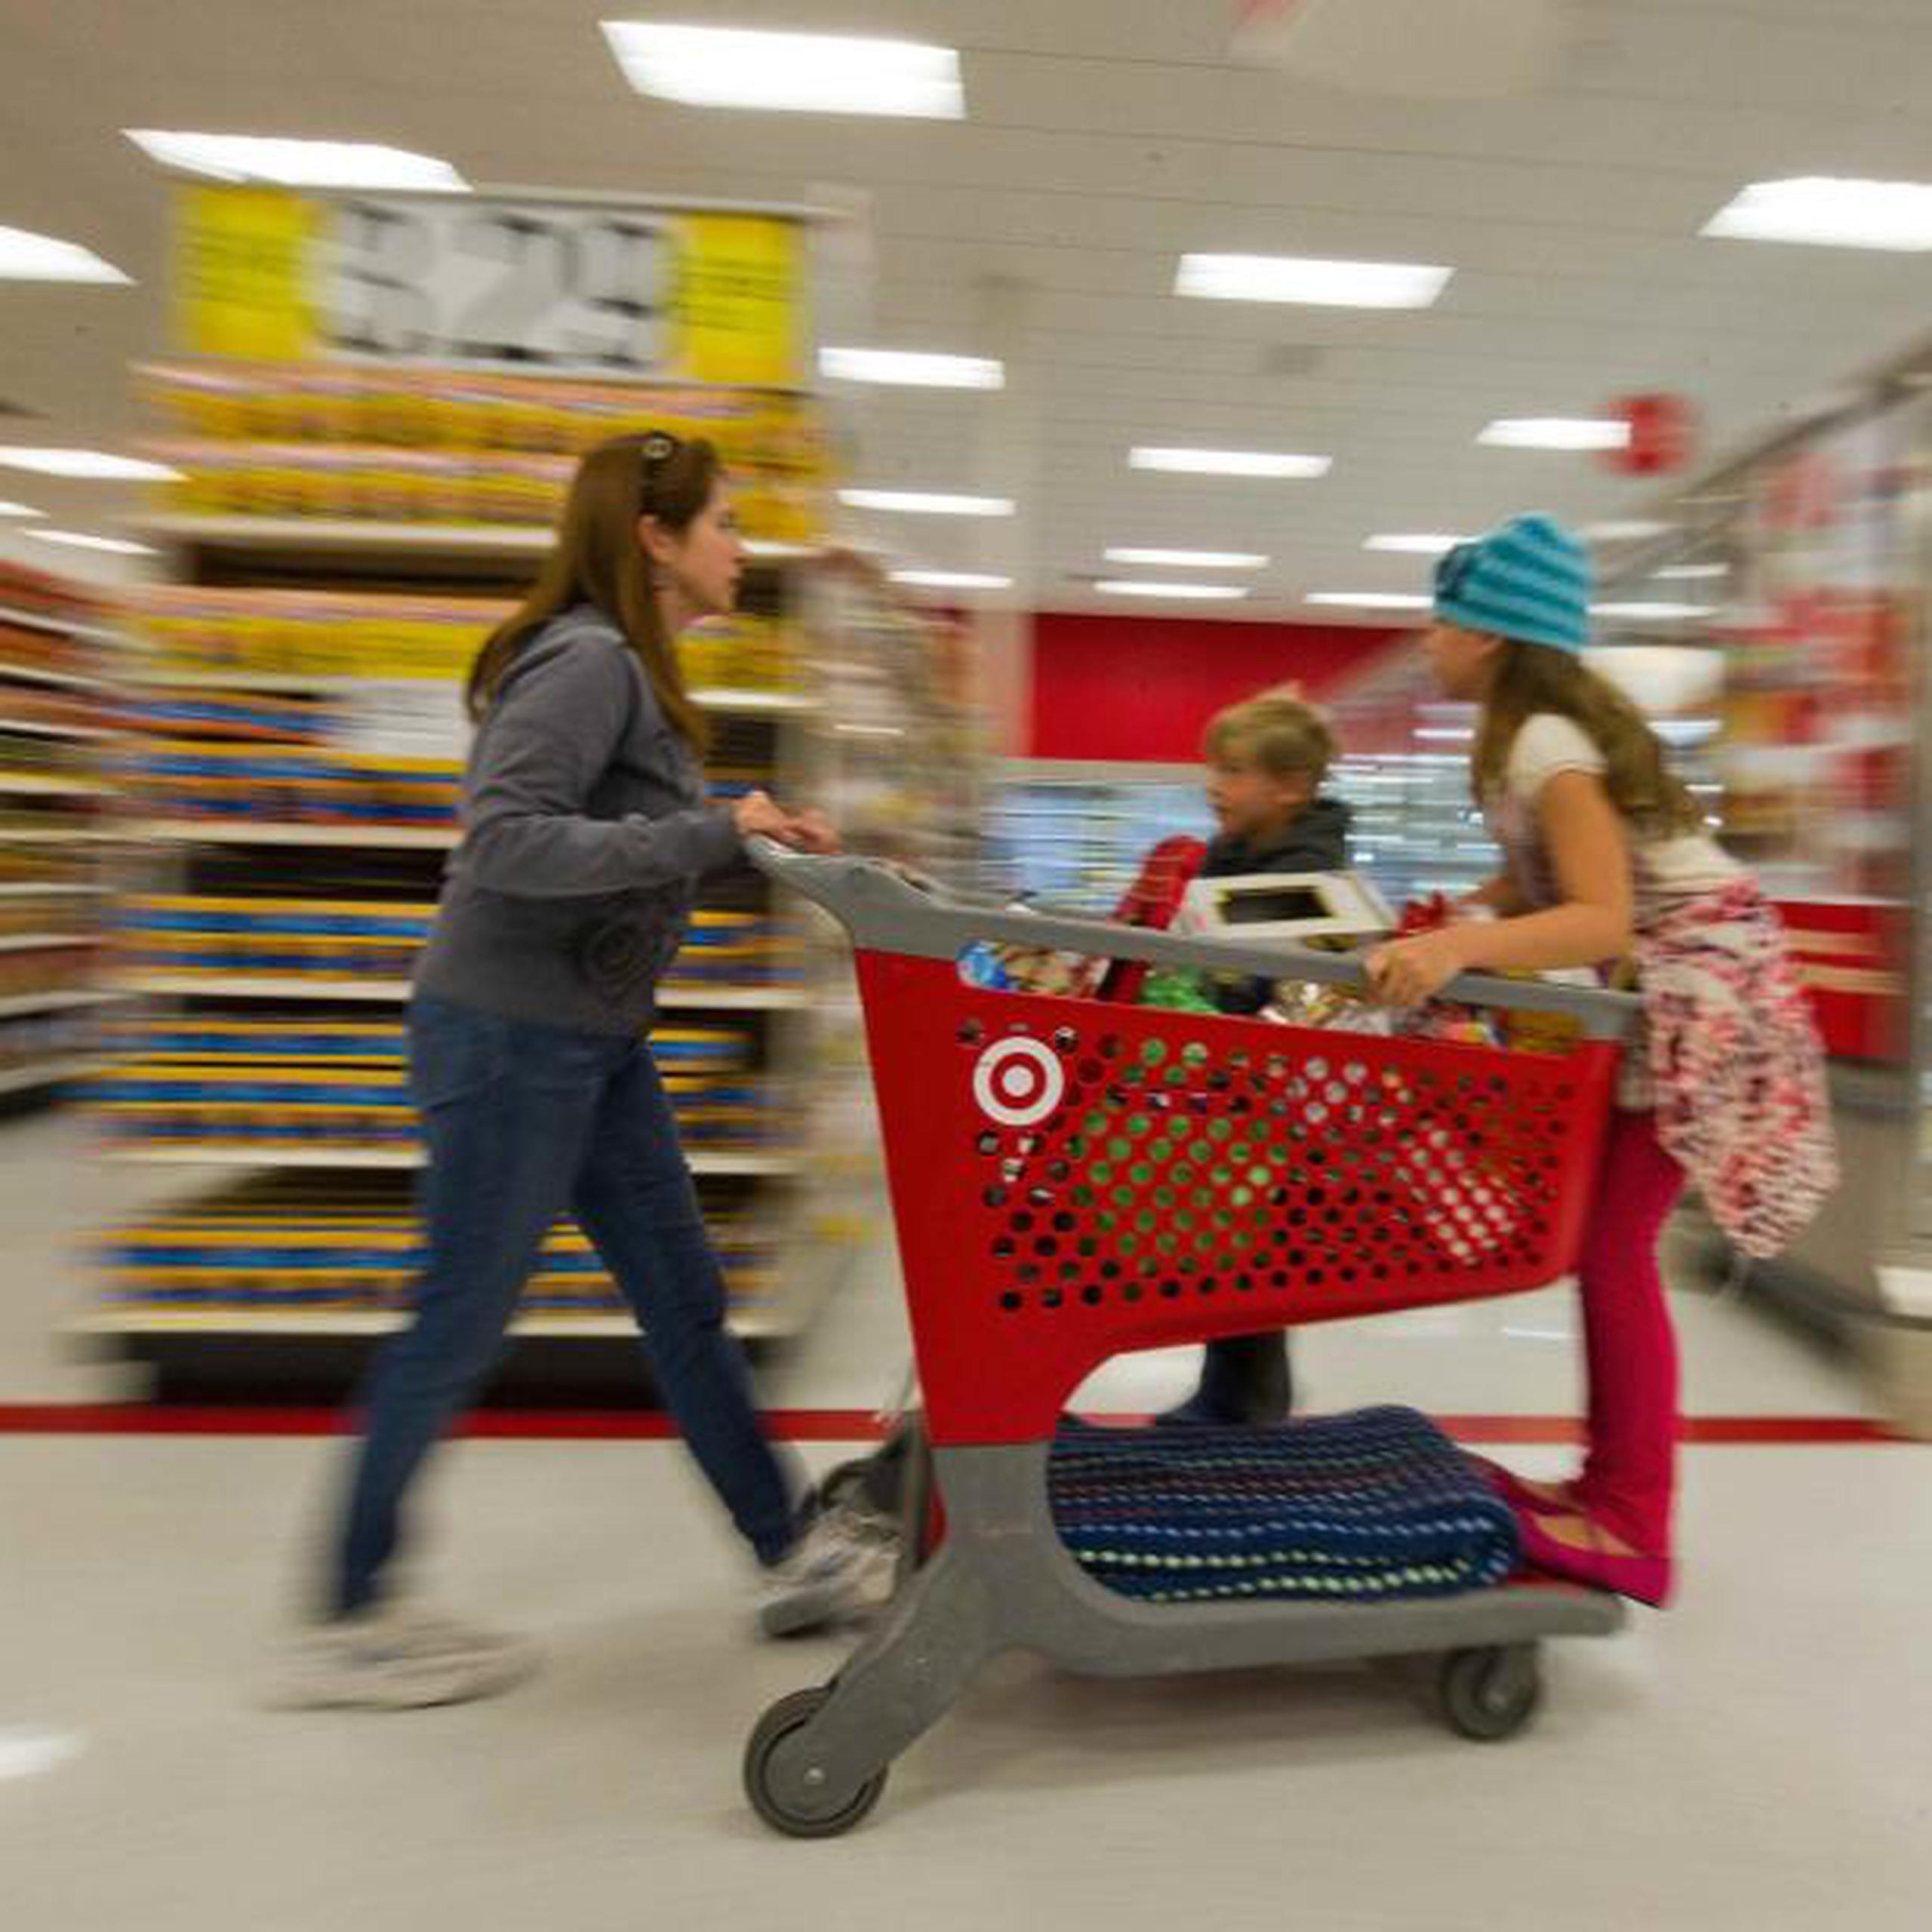 Target tiene más de 1,800 tiendas en Estados Unidos. (Archivo)

